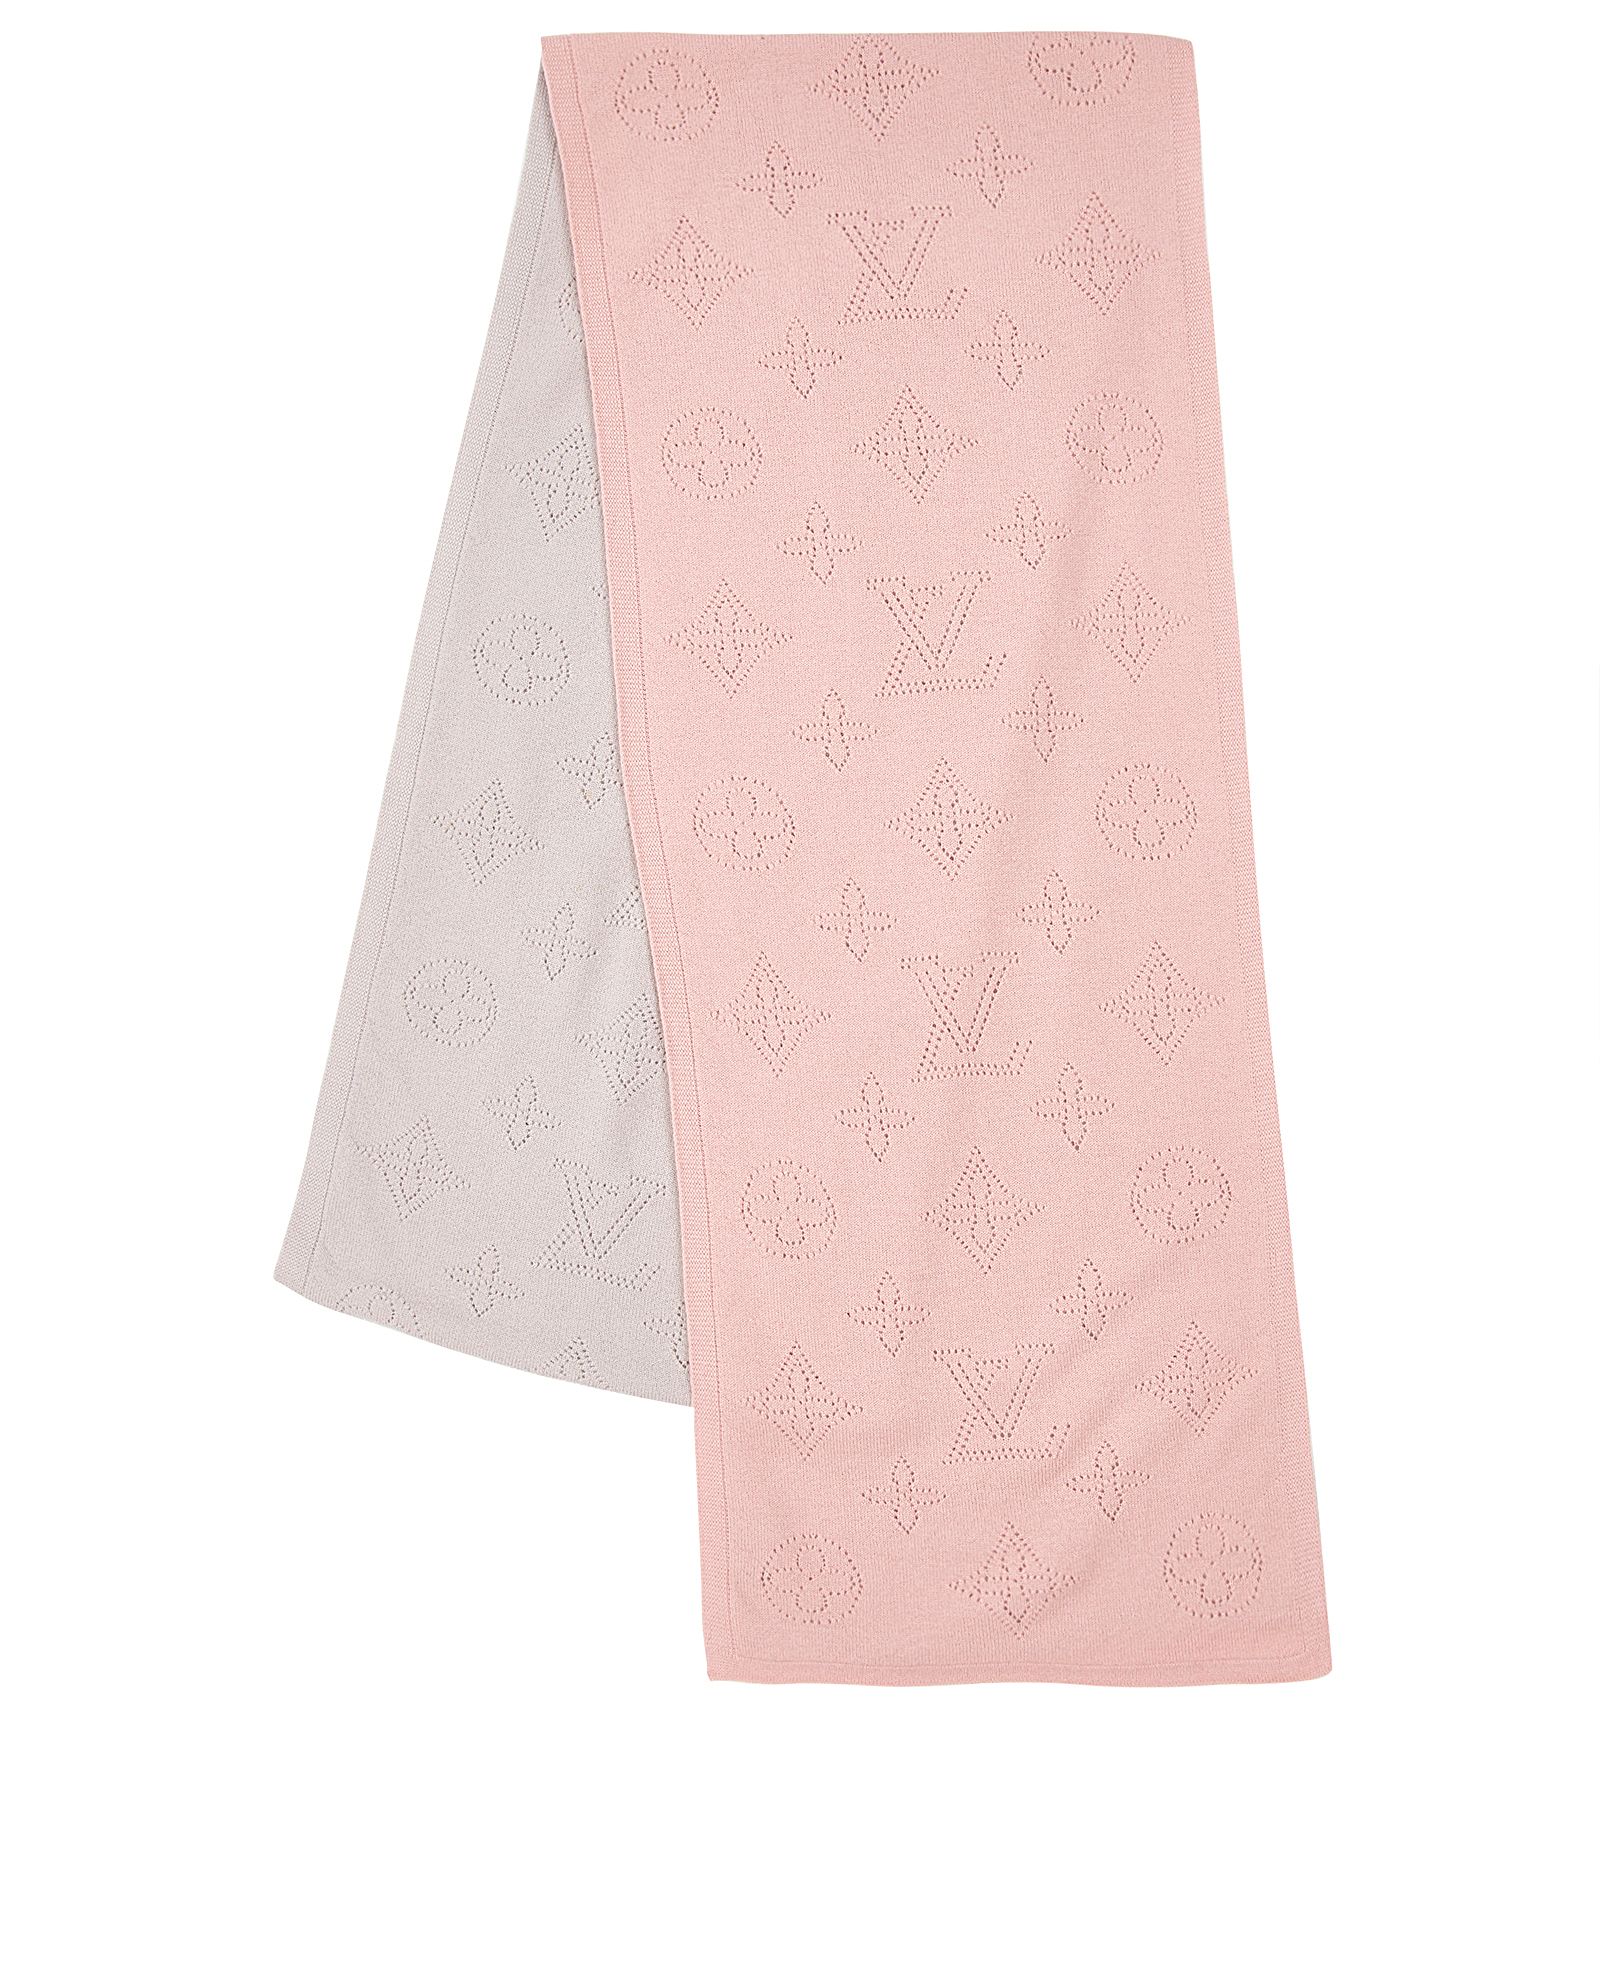 Pink Louis Vuitton Scarf -  UK